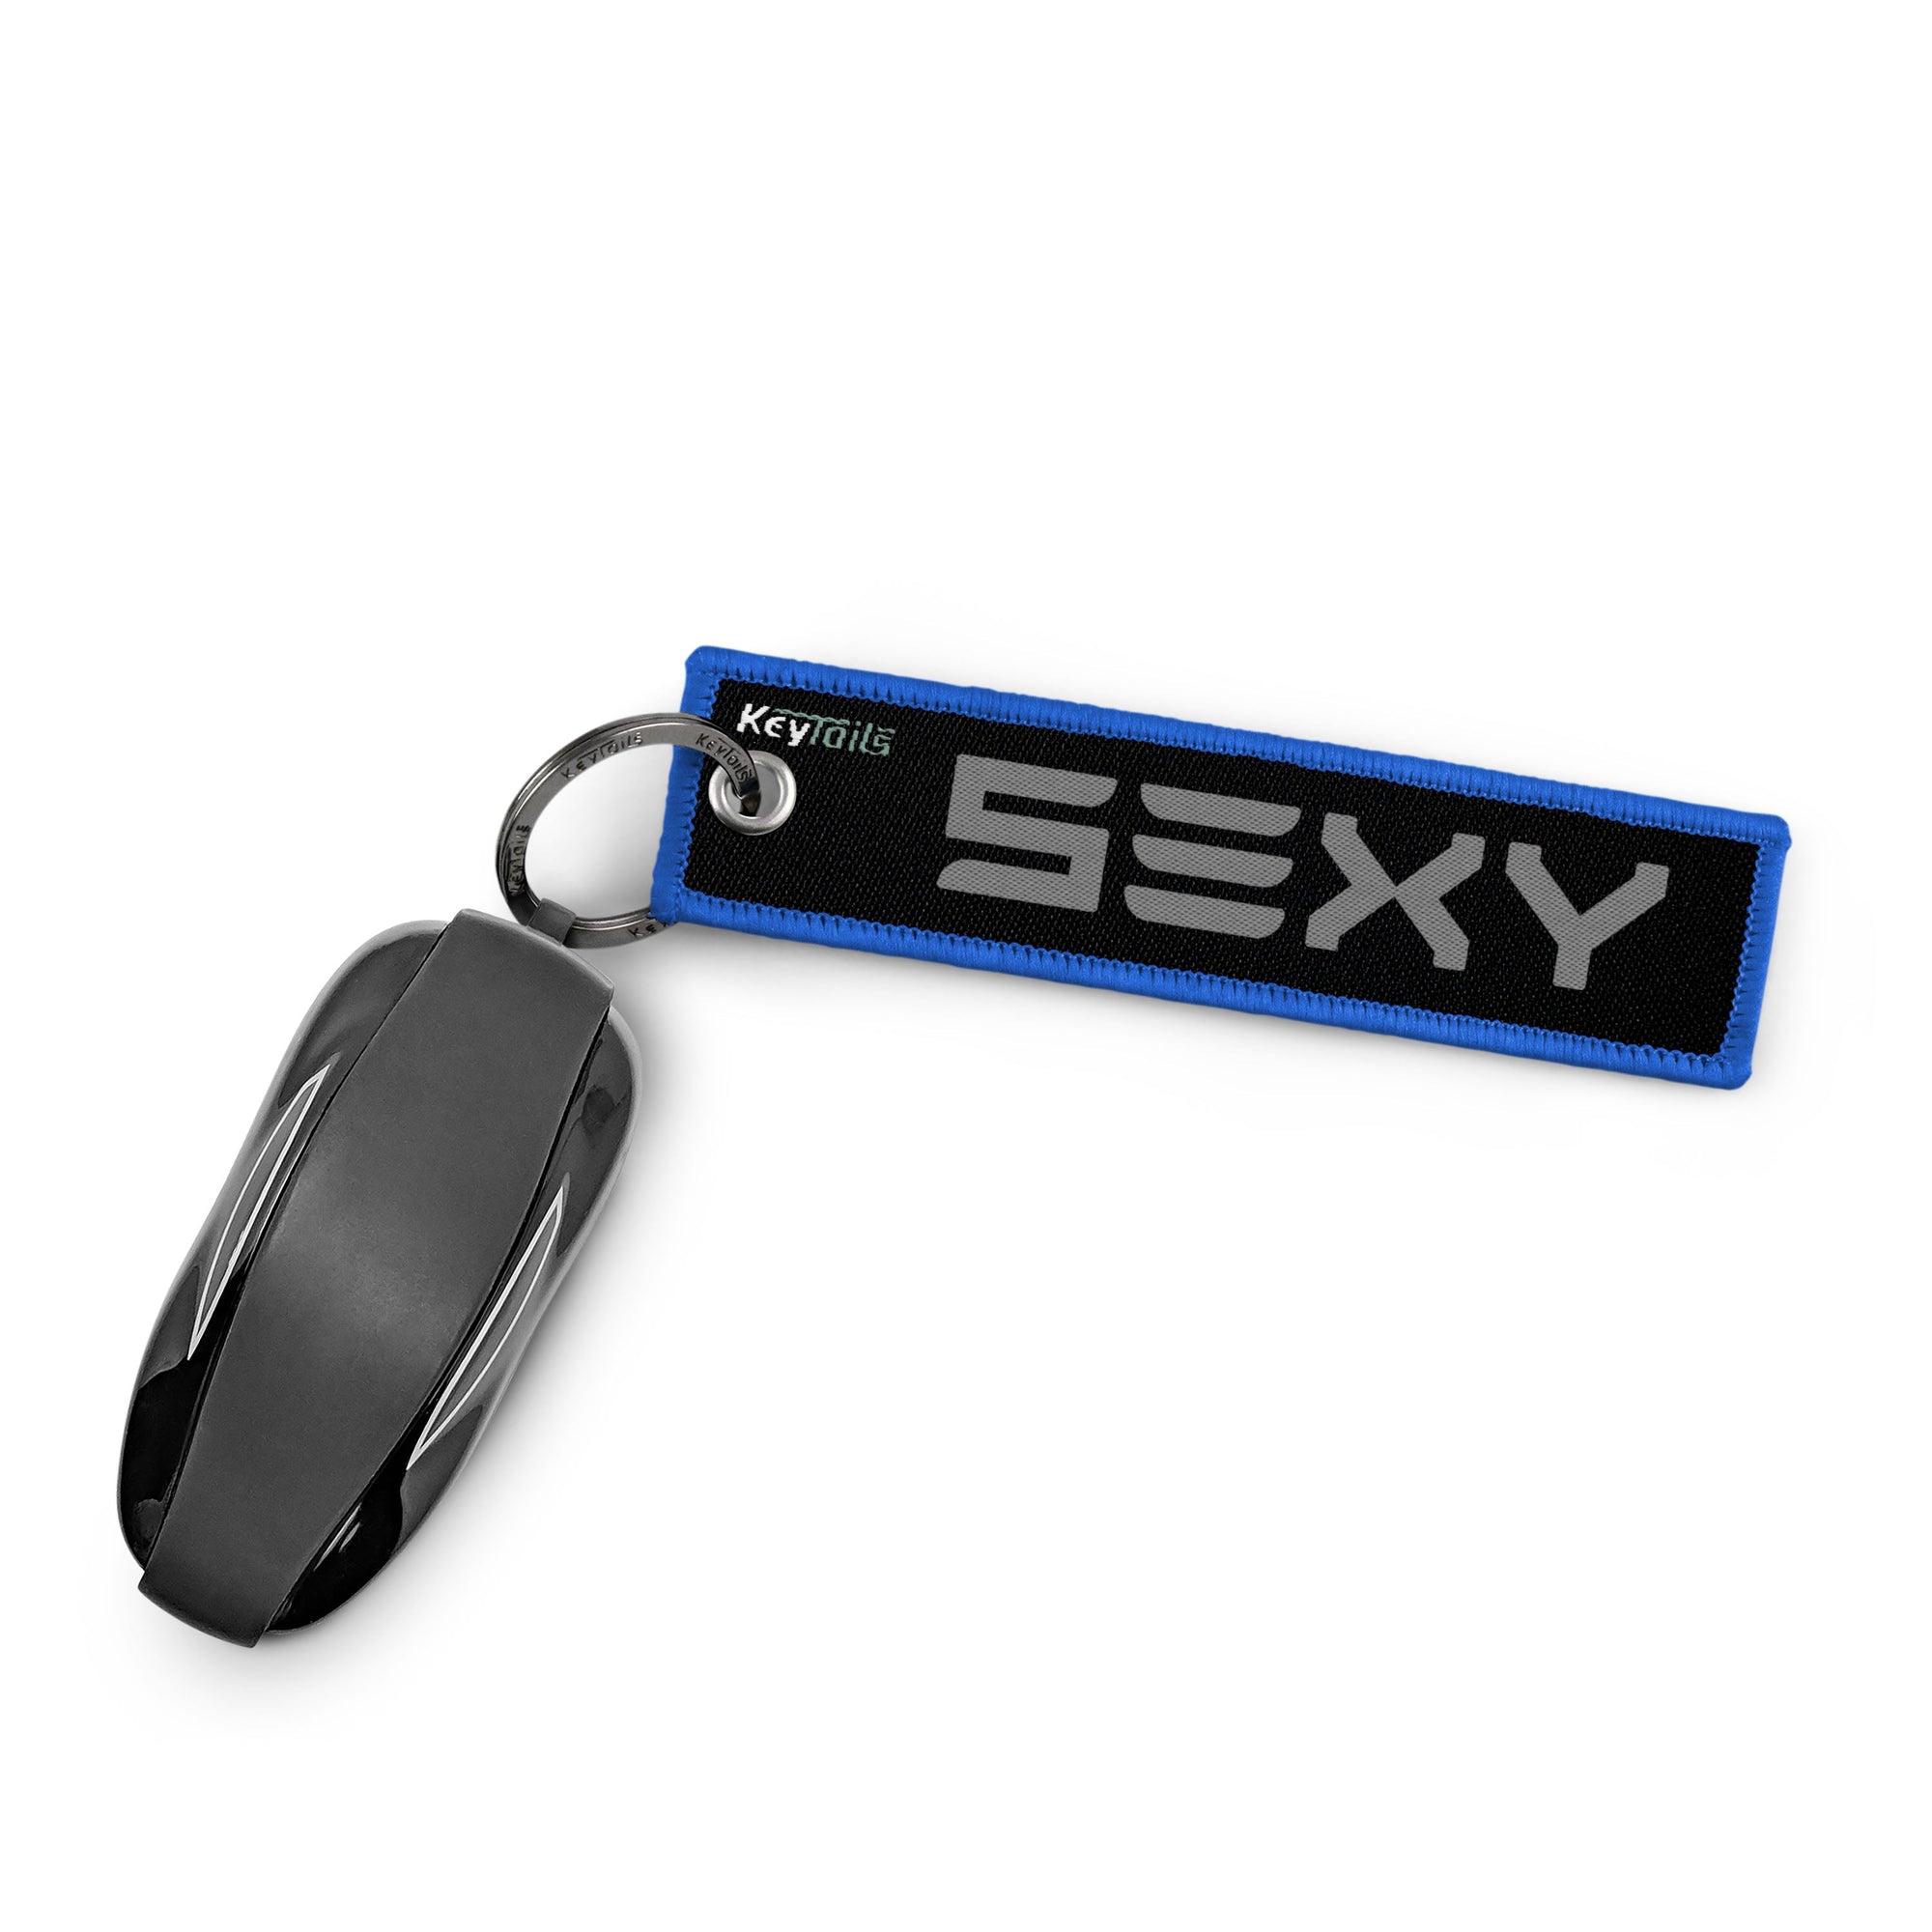 Sexy Keychain, Key Tag - Gray